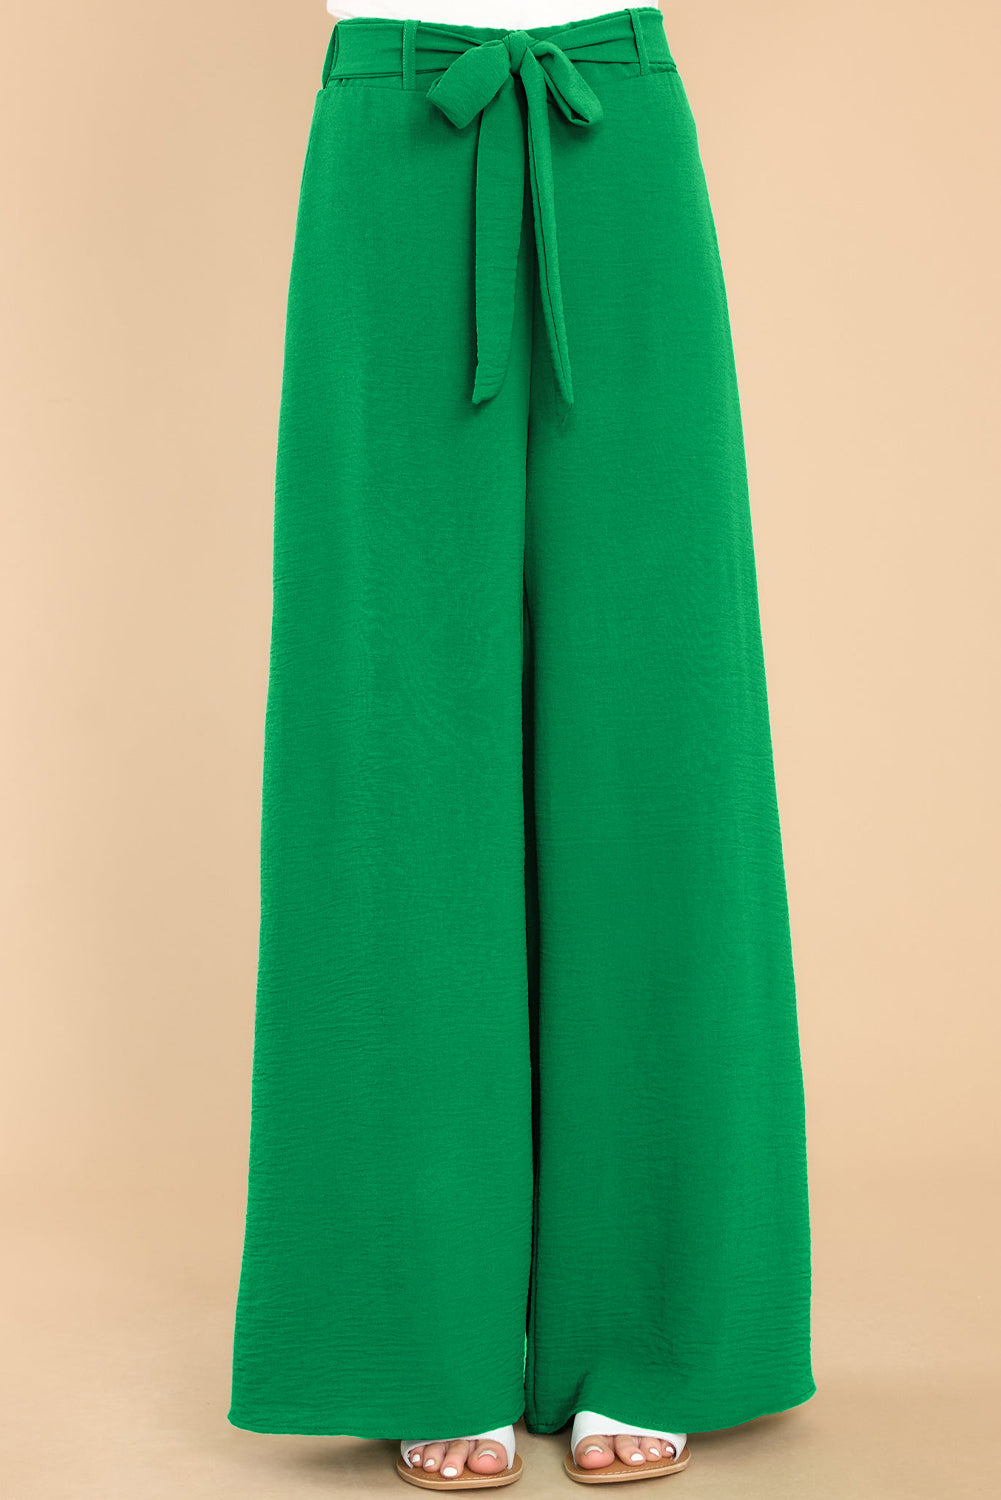 Svetlo zelene široke hlače z visokim pasom in zankami